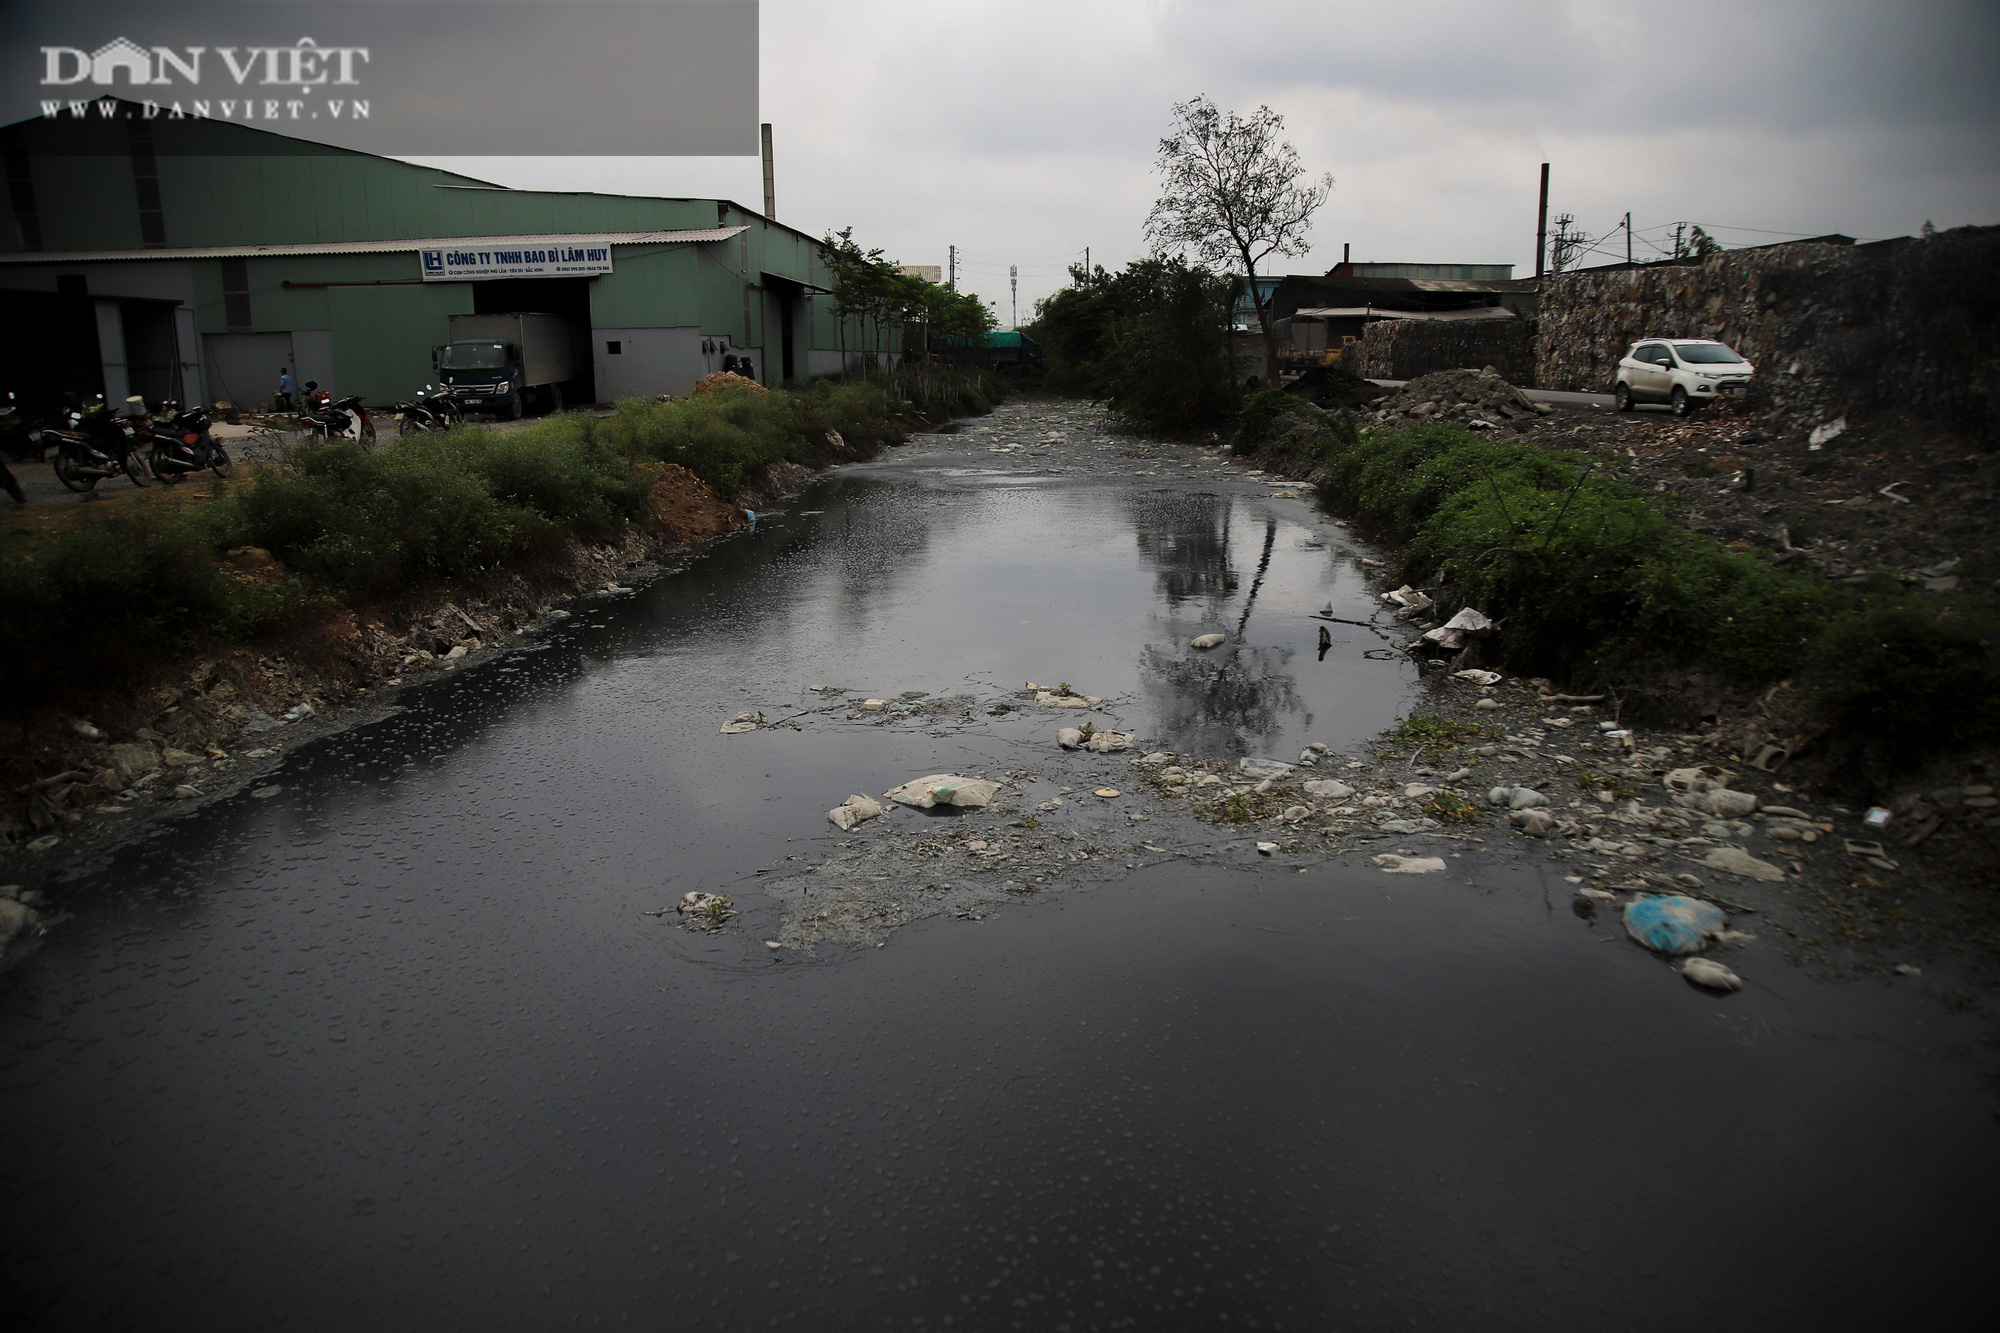 Bắc Ninh: Chi gần 3,9 tỷ đồng điều tra, đánh giá phân loại ô nhiễm môi trường làng nghề, cụm công nghiệp - Ảnh 1.